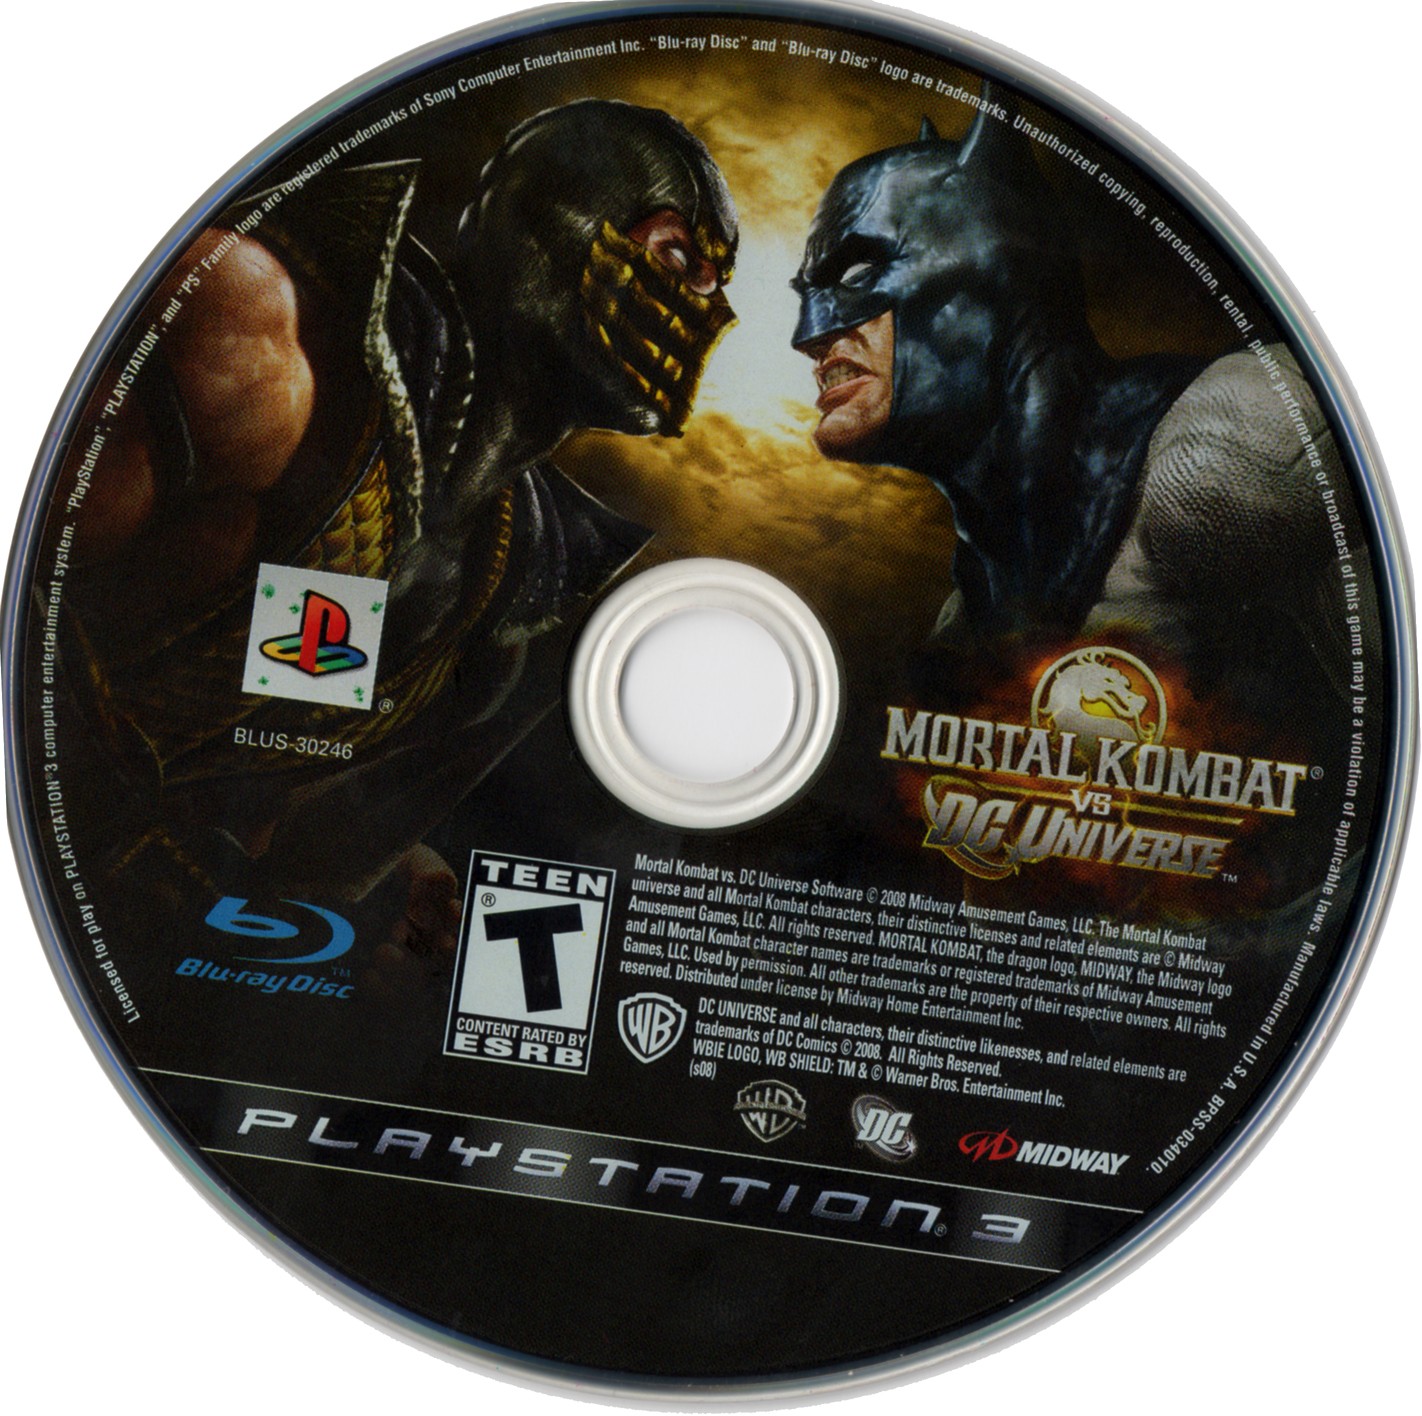 Мортал комбат на xbox 360 freeboot. Mortal Kombat vs DC Universe ps3. Мортал комбат на Xbox 360. Mortal Kombat vs DC Universe Xbox 360. Mortal Kombat vs DC Universe фаталити.